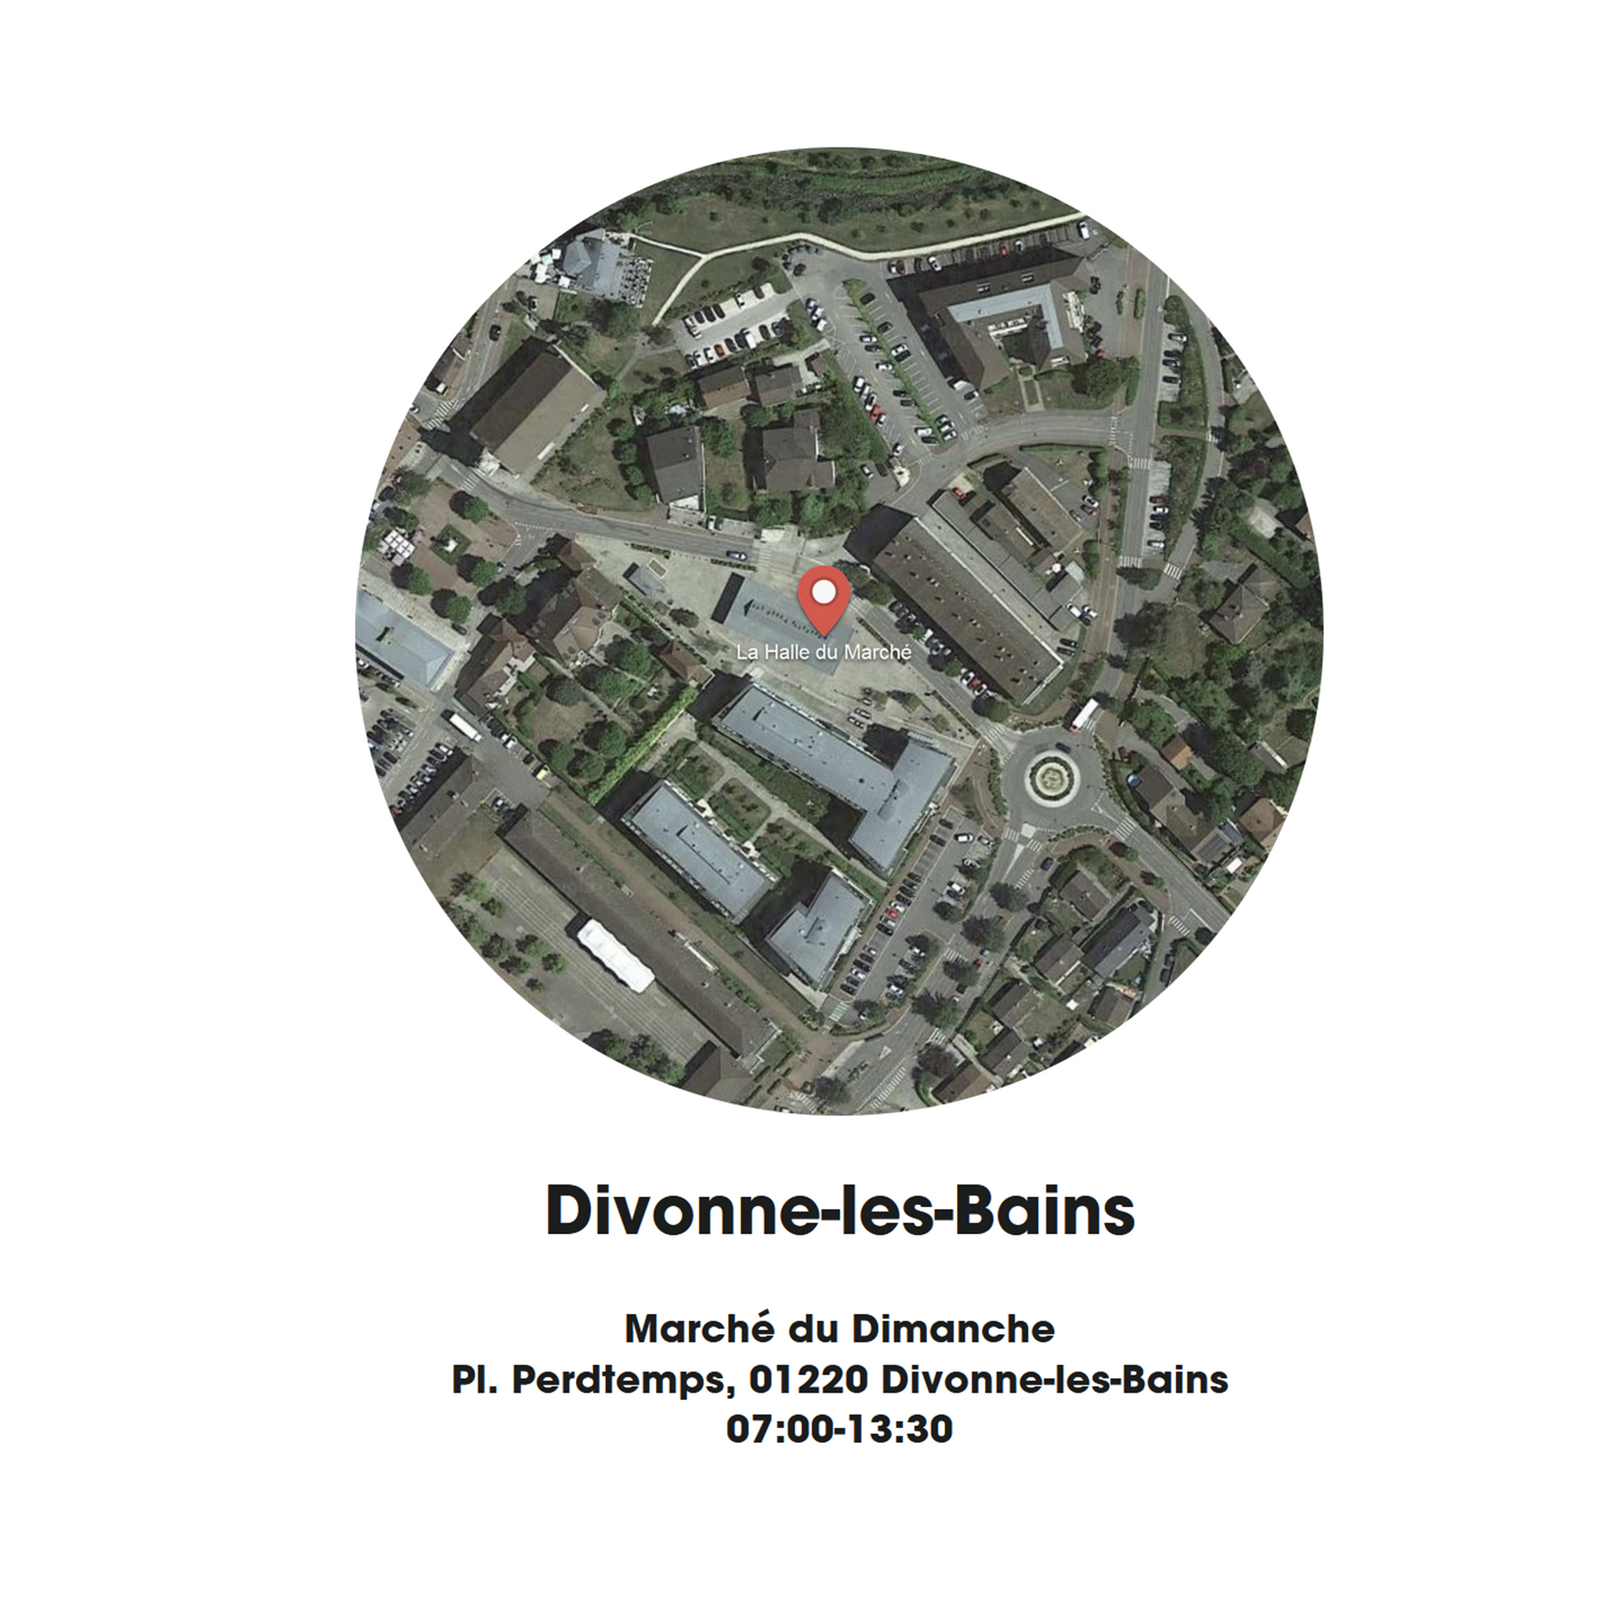 Grain & Feuille - Divonne-les-Bains